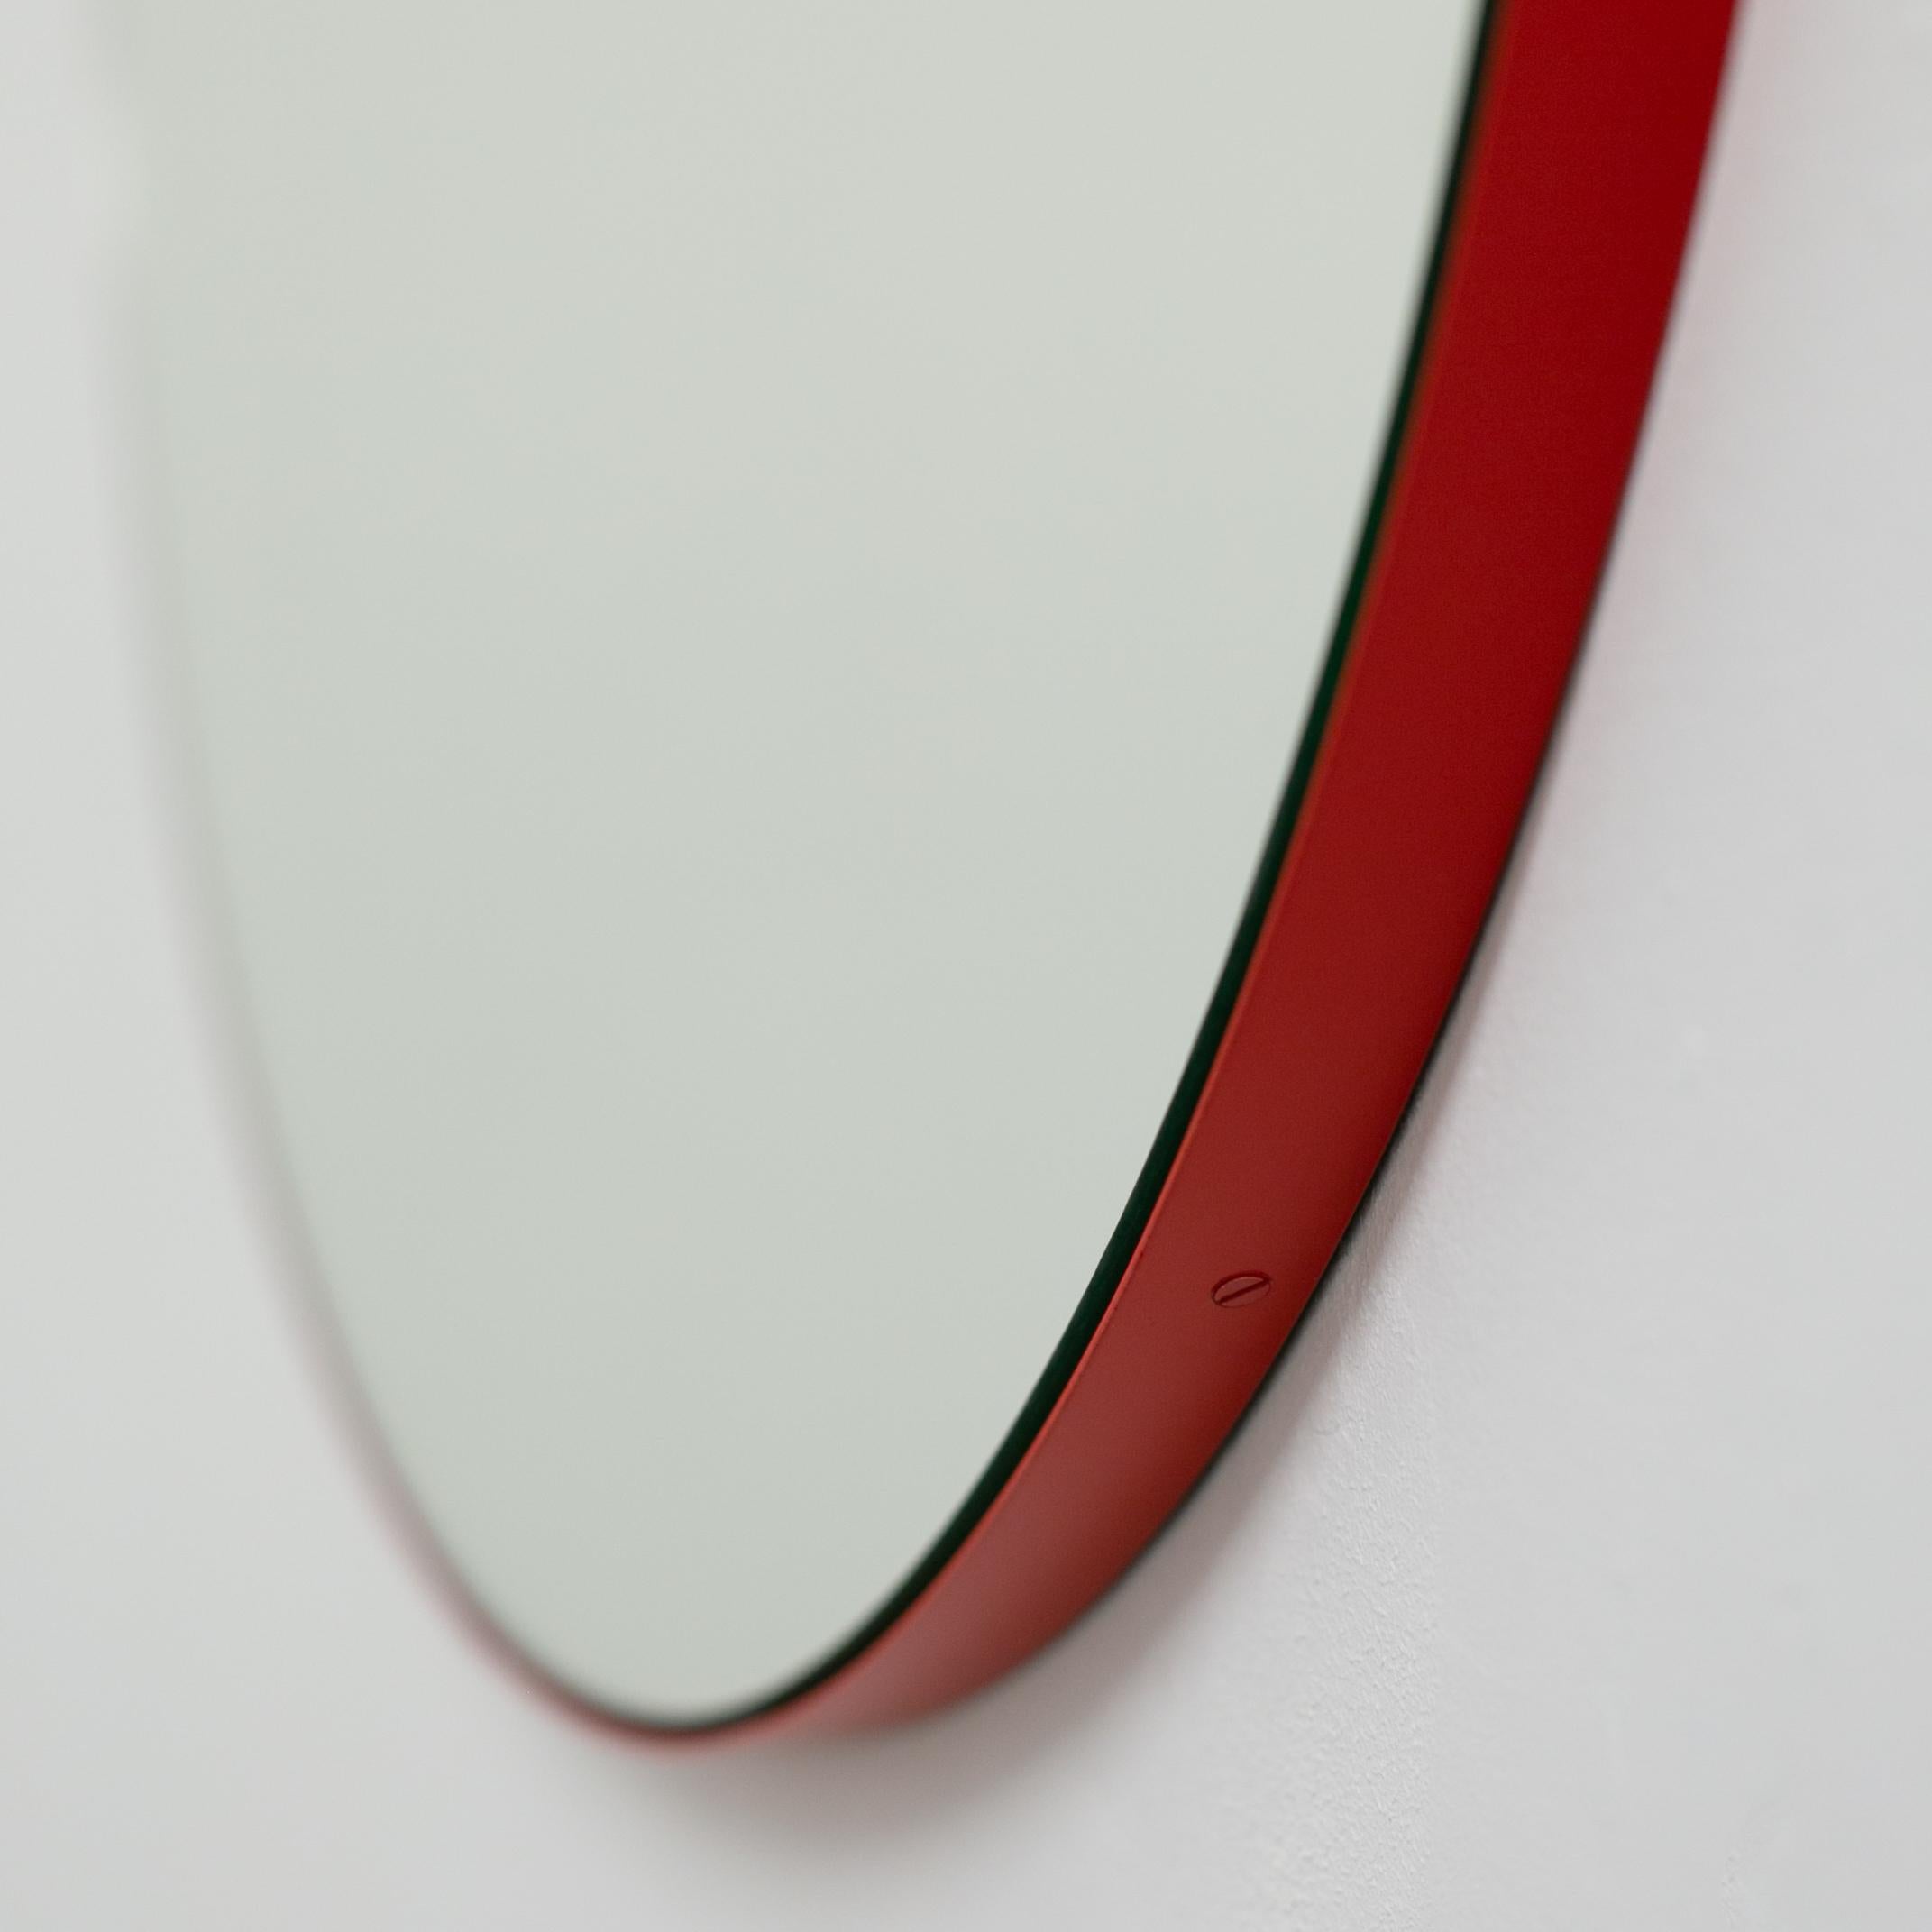 Miroir rond minimaliste avec un cadre moderne en aluminium peint par poudrage en rouge. Conçu et fabriqué à la main à Londres, au Royaume-Uni.

Les miroirs de taille moyenne, grande et extra-large (60, 80 et 100 cm) sont équipés d'un ingénieux